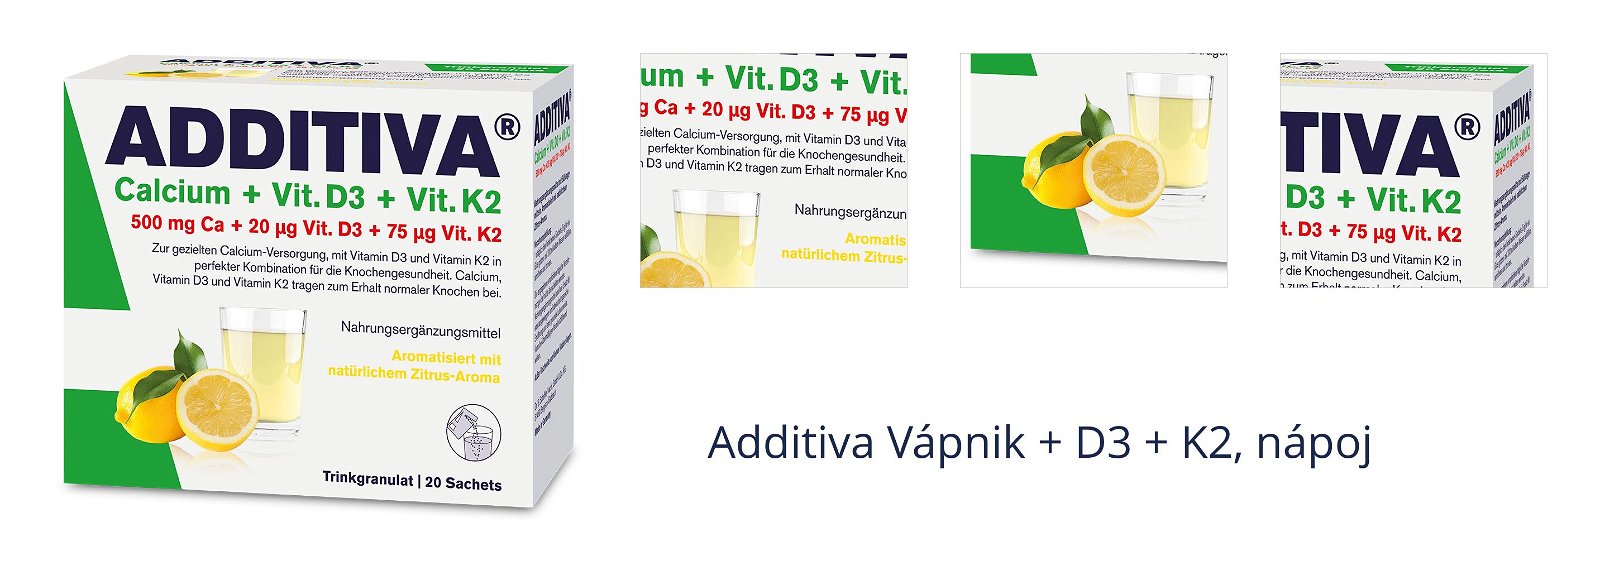 Additiva Vápnik + D3 + K2, nápoj 1